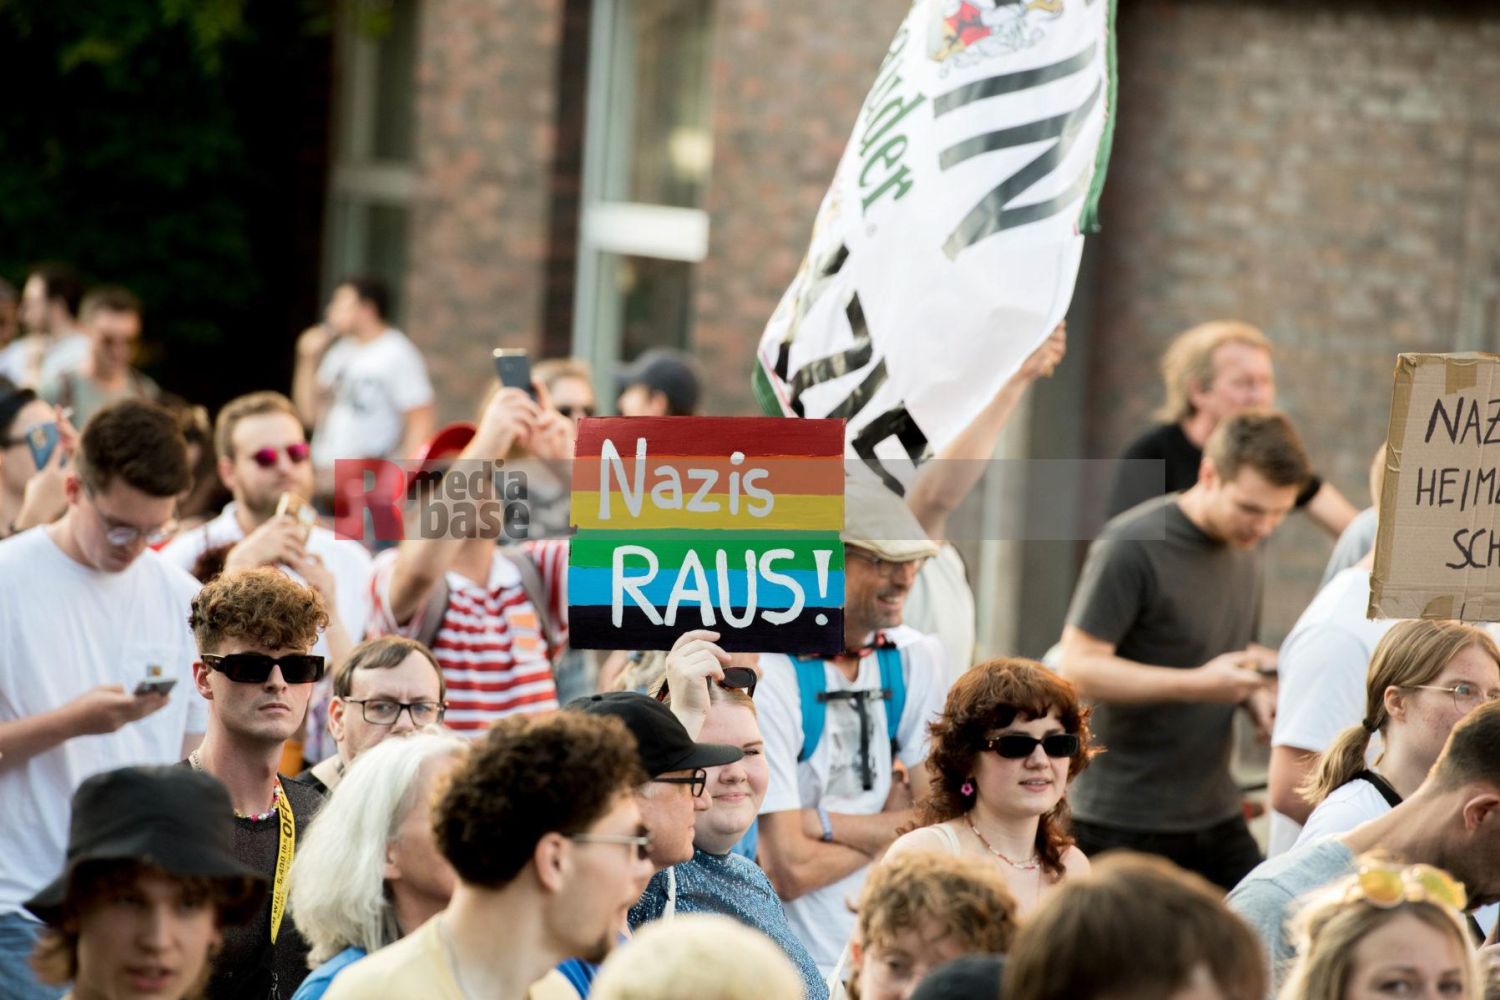 Laut - Bunt - Entschlossen! Protest gegen den Bundesparteitag der AfD in Essen <i>Bild Christian Schneider/R-mediabase</i> <br><a href=/confor2/?bld=83031&pst=82663&aid=615&dc=1321&i1=Christian%20Schneider/R-mediabase><strong>Downloadanfrage</strong></a>  